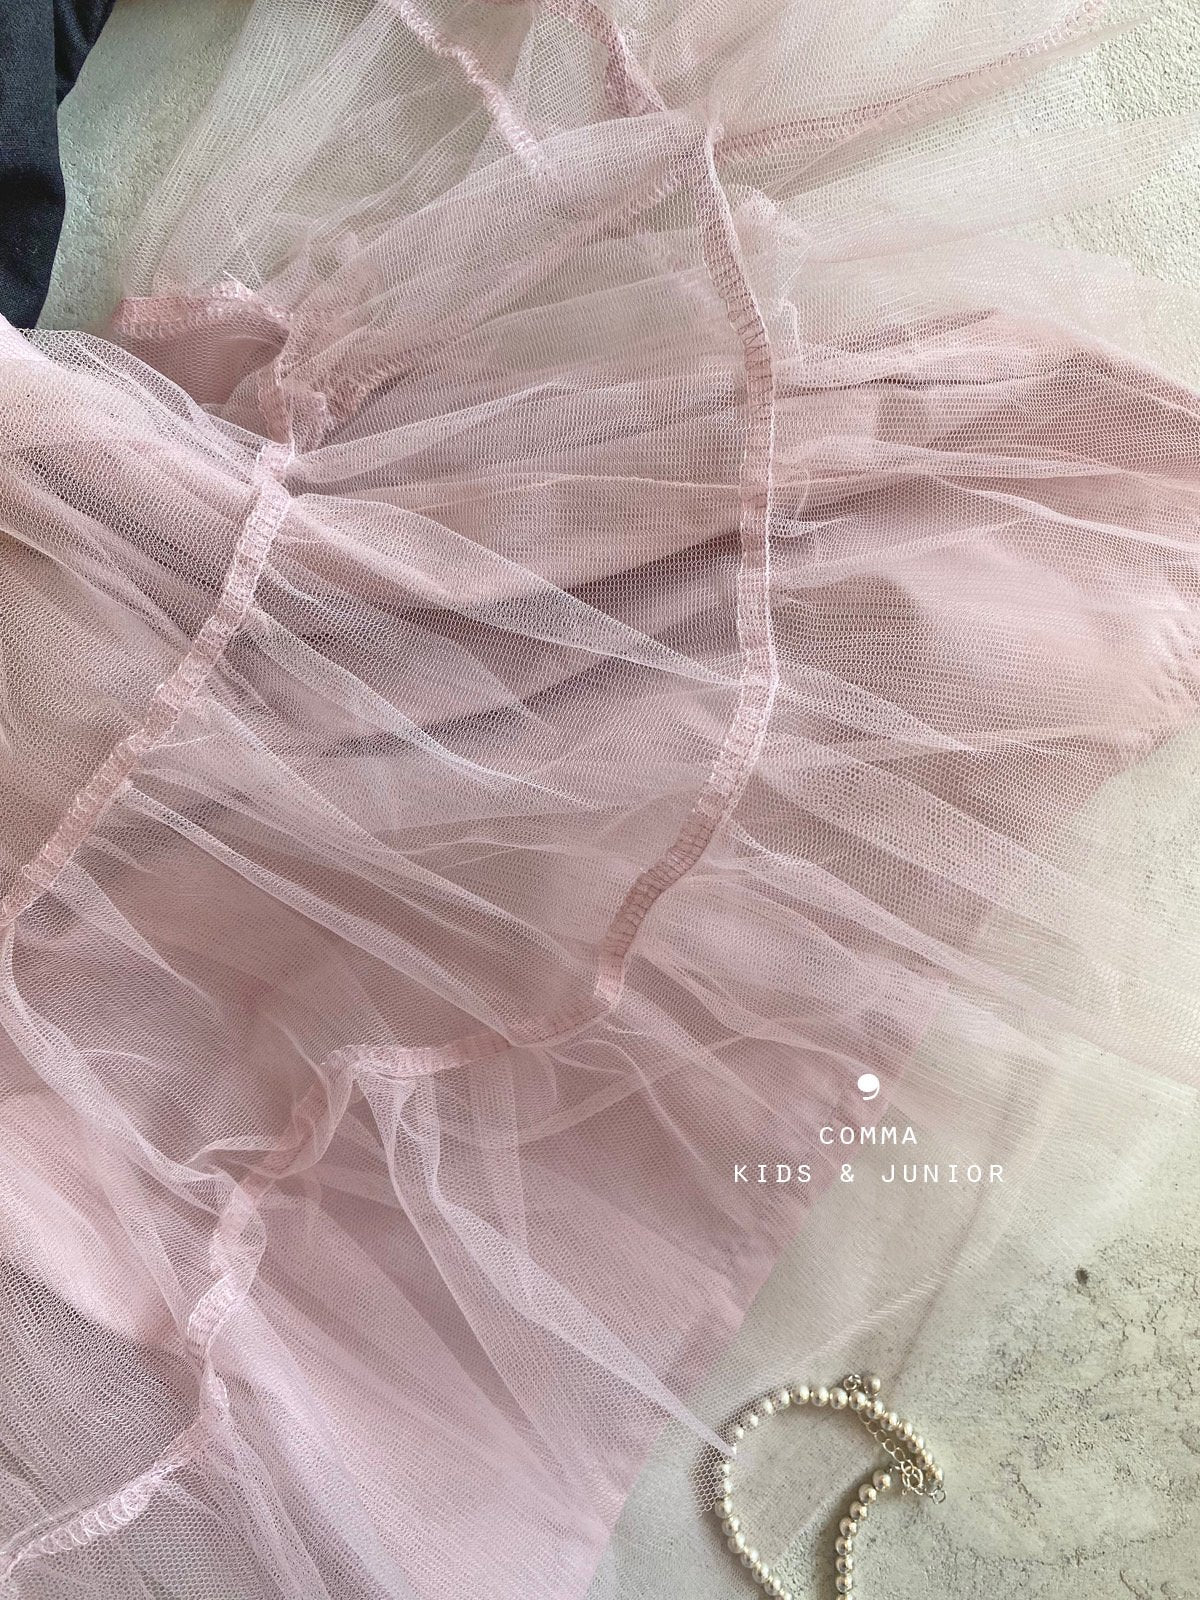 【注文後取り寄せ】韓国子供服 Comma 女の子 子供服 秋新作 レースフレアスカート 2色 90-150サイズ